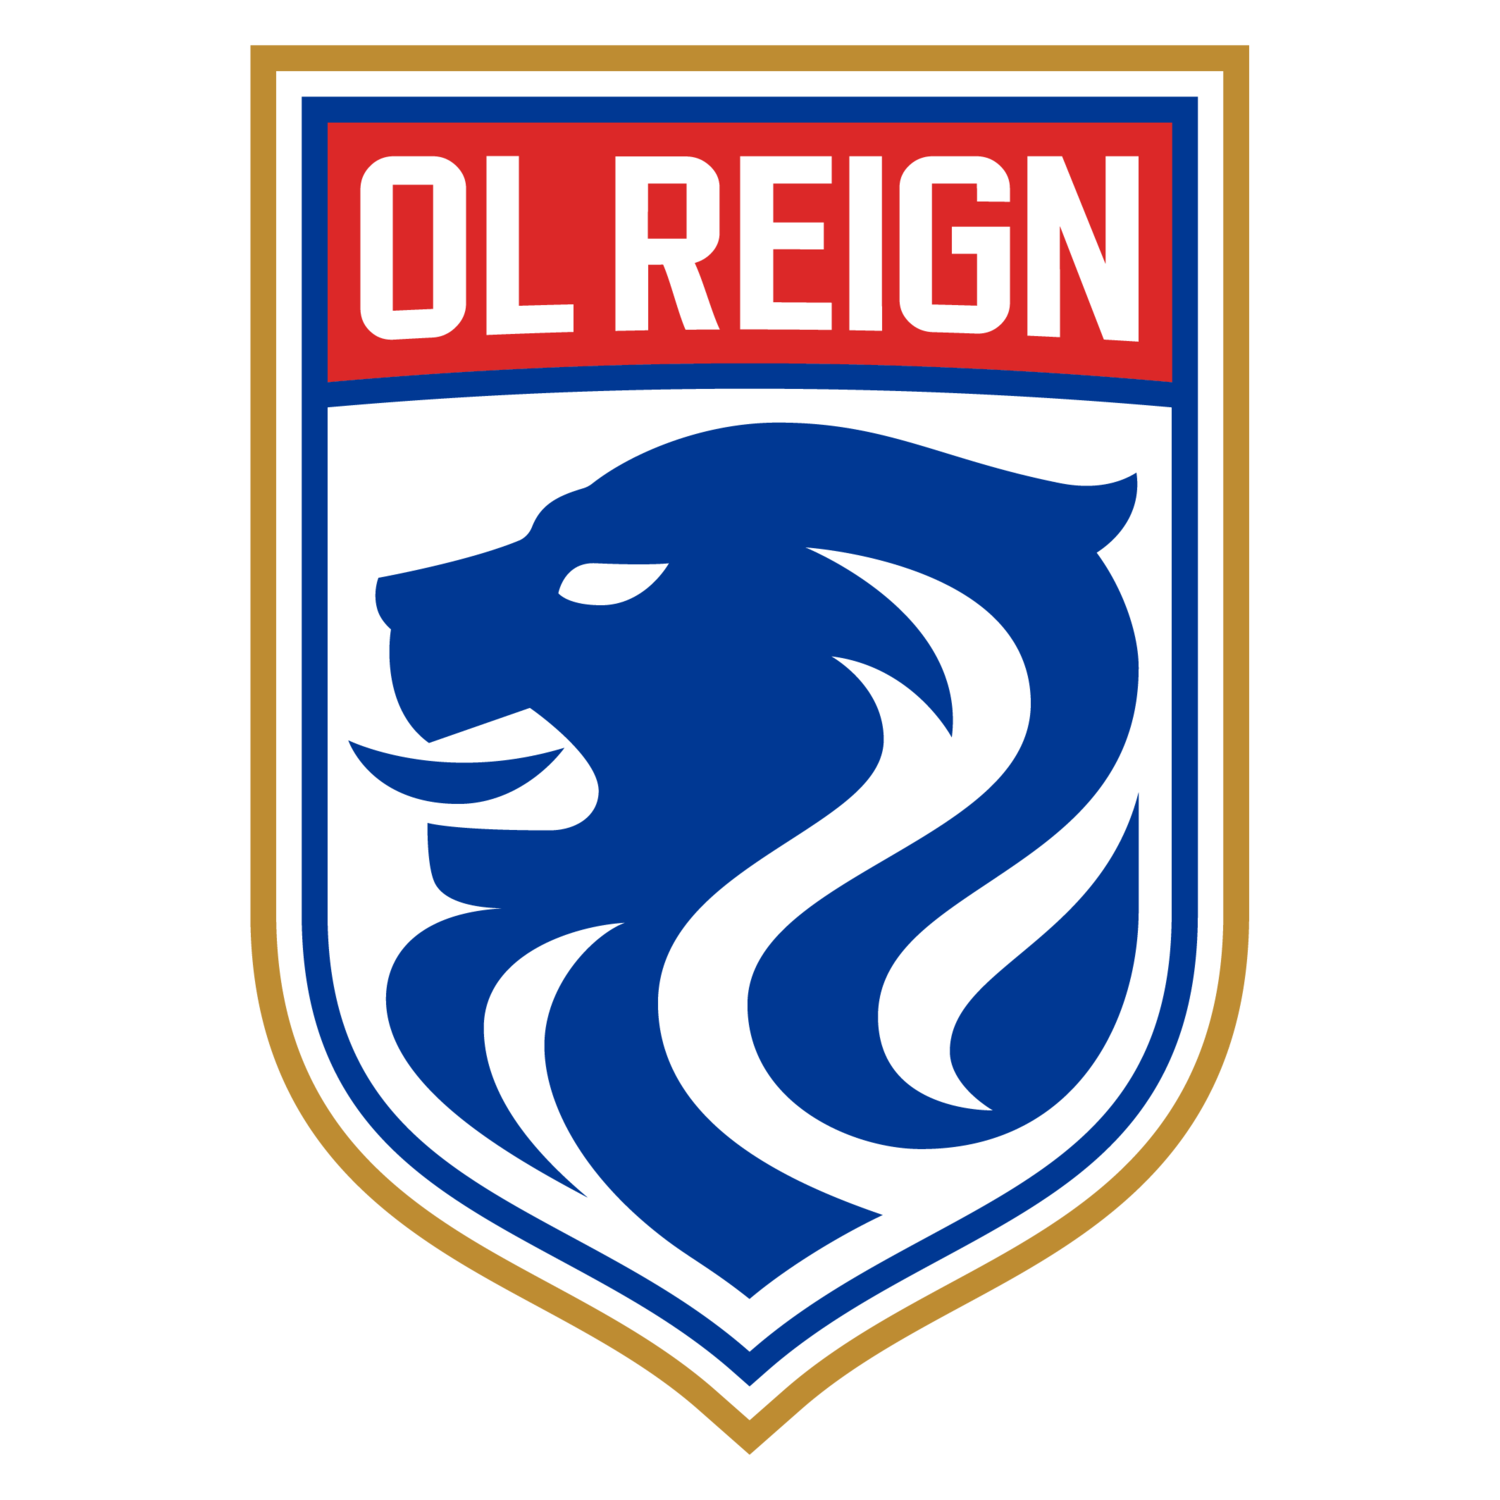 OL Reign Women logo